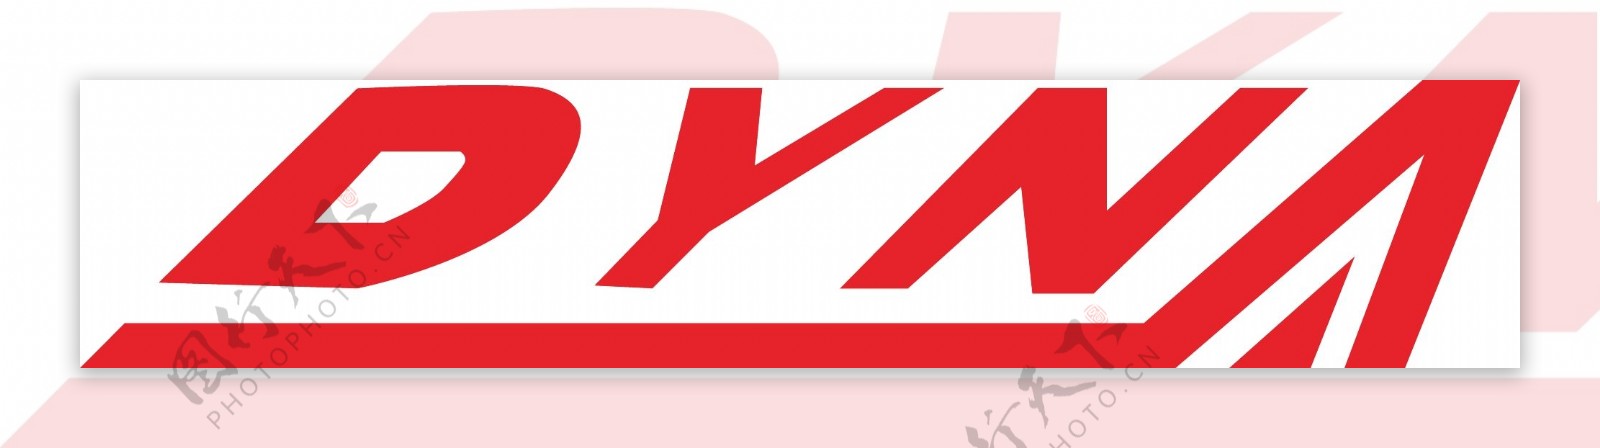 飞航logodynad开头的logo图片